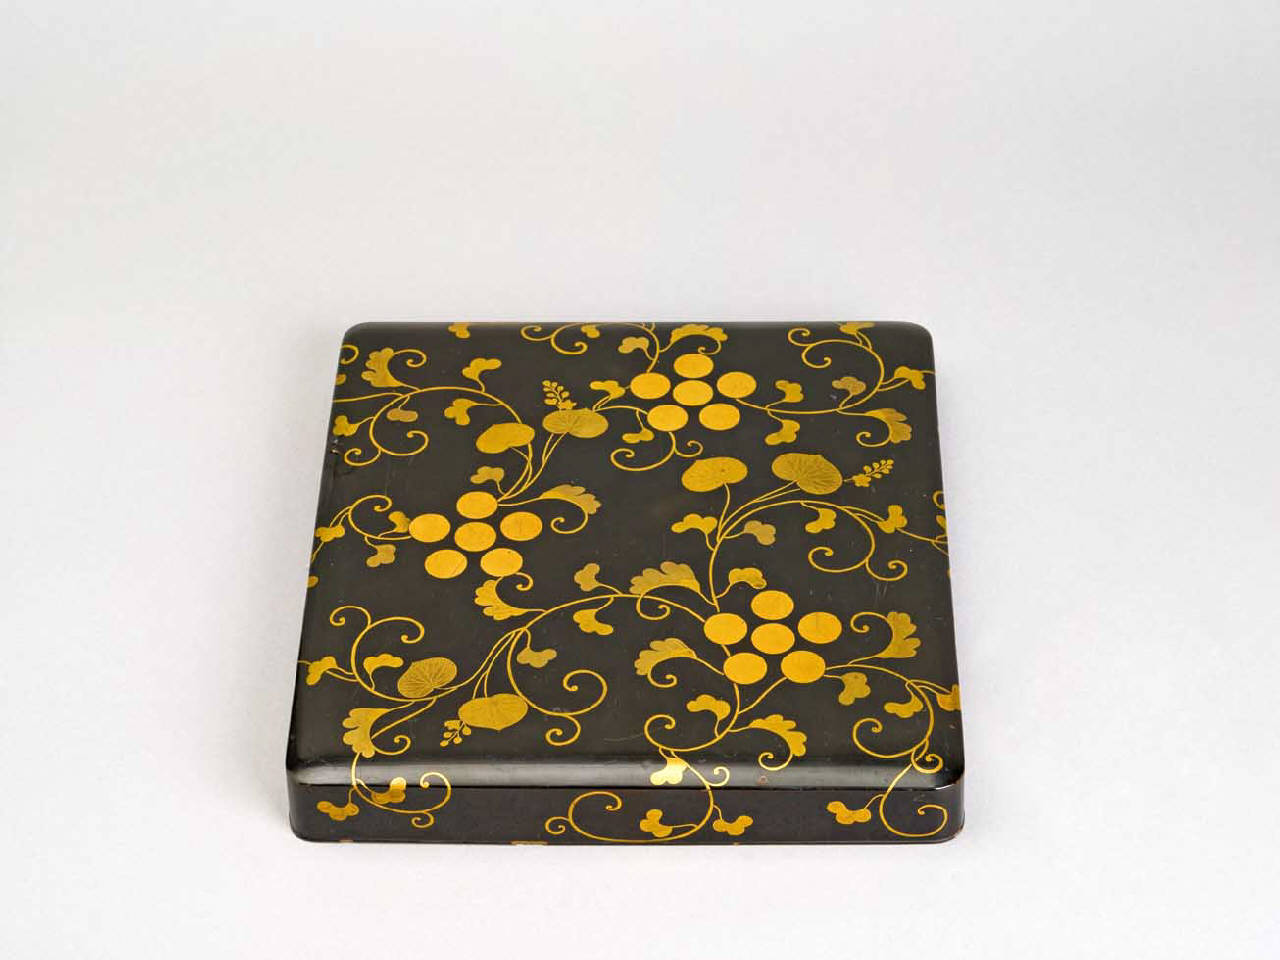 tralci fitomorfi (coperchio di scatola per calligrafia) - manifattura giapponese (sec. XIX)